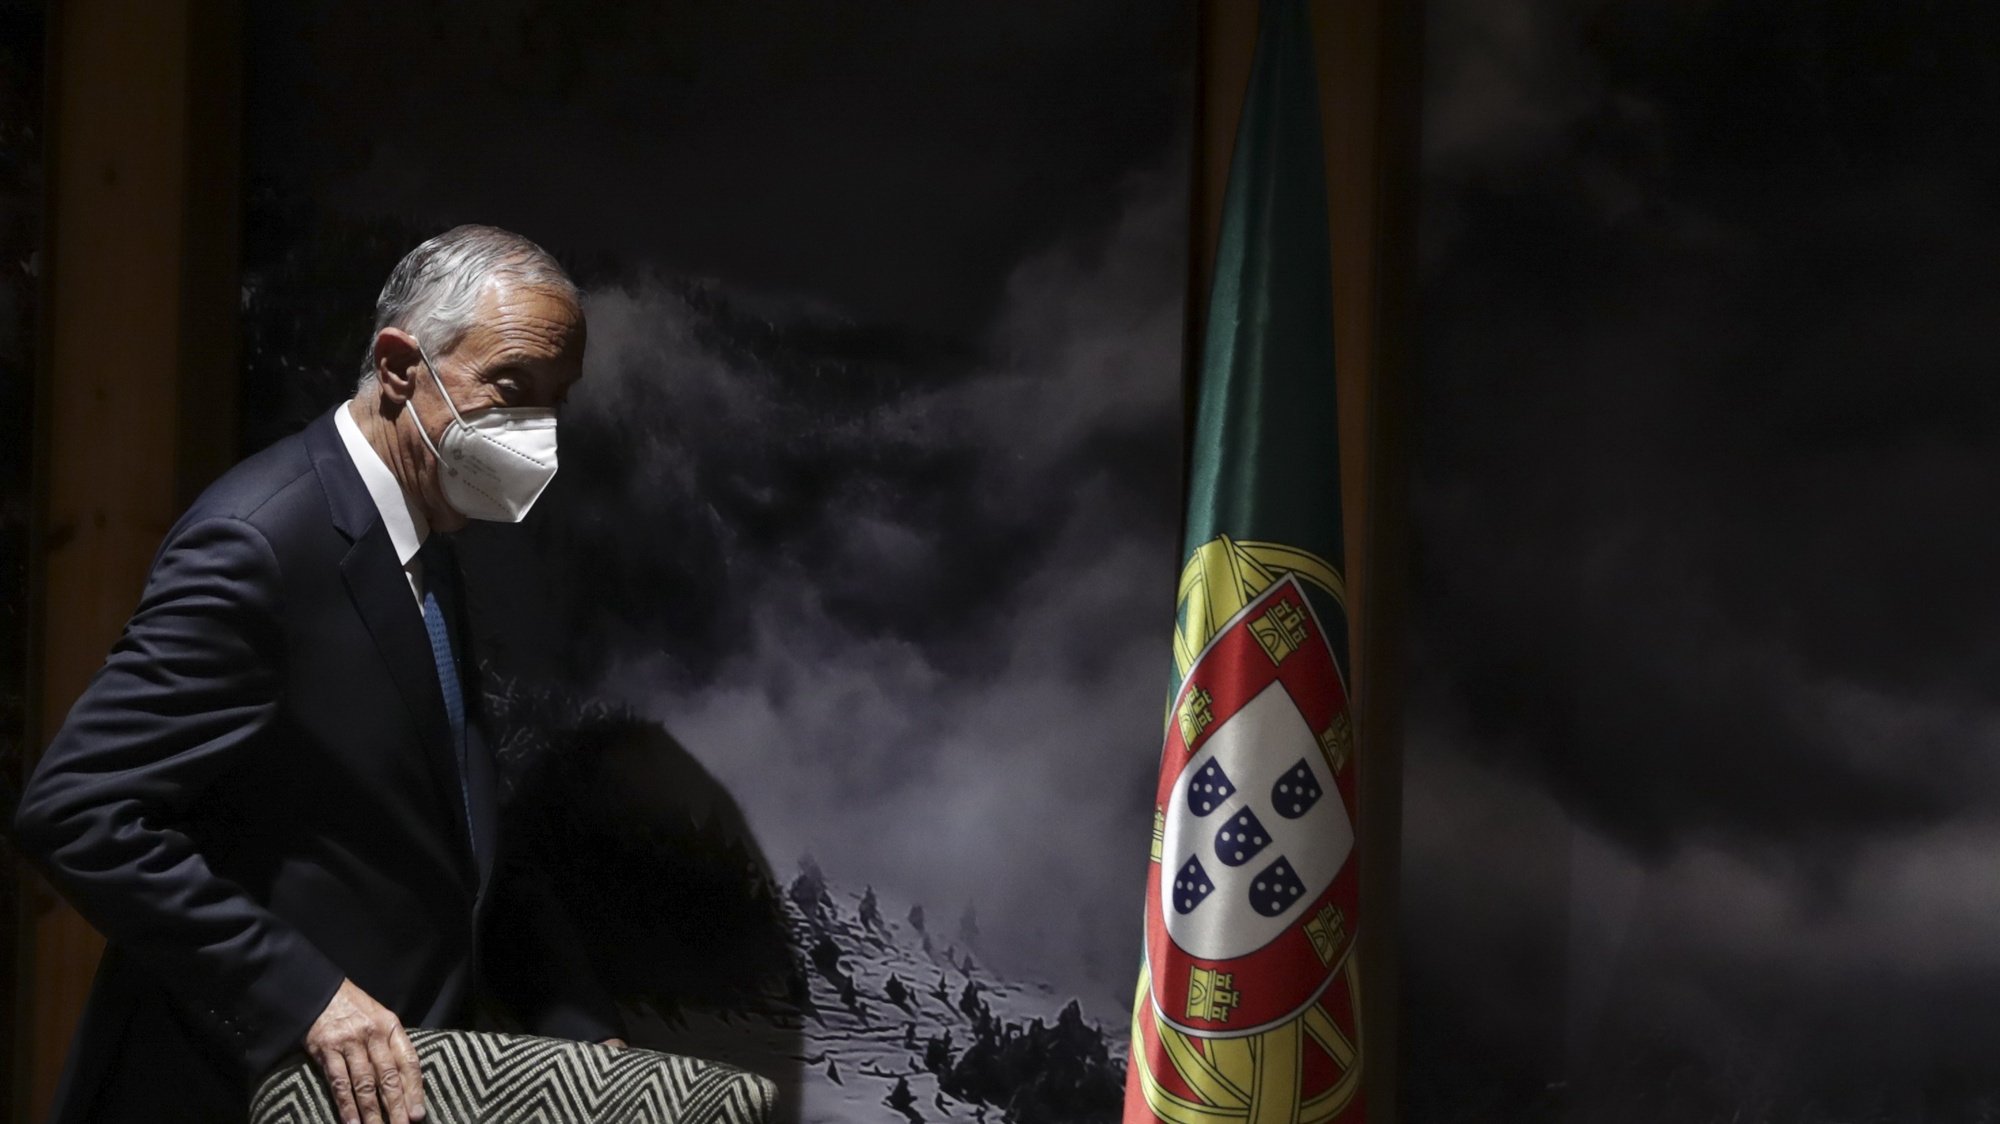 O Presidente da República, Marcelo Rebelo de Sousa, pouco antes de prestar declarações durante a XXVII Cimeira Ibero-Americana, em Andorra, 21 de abril de 2021. TIAGO PETINGA/LUSA